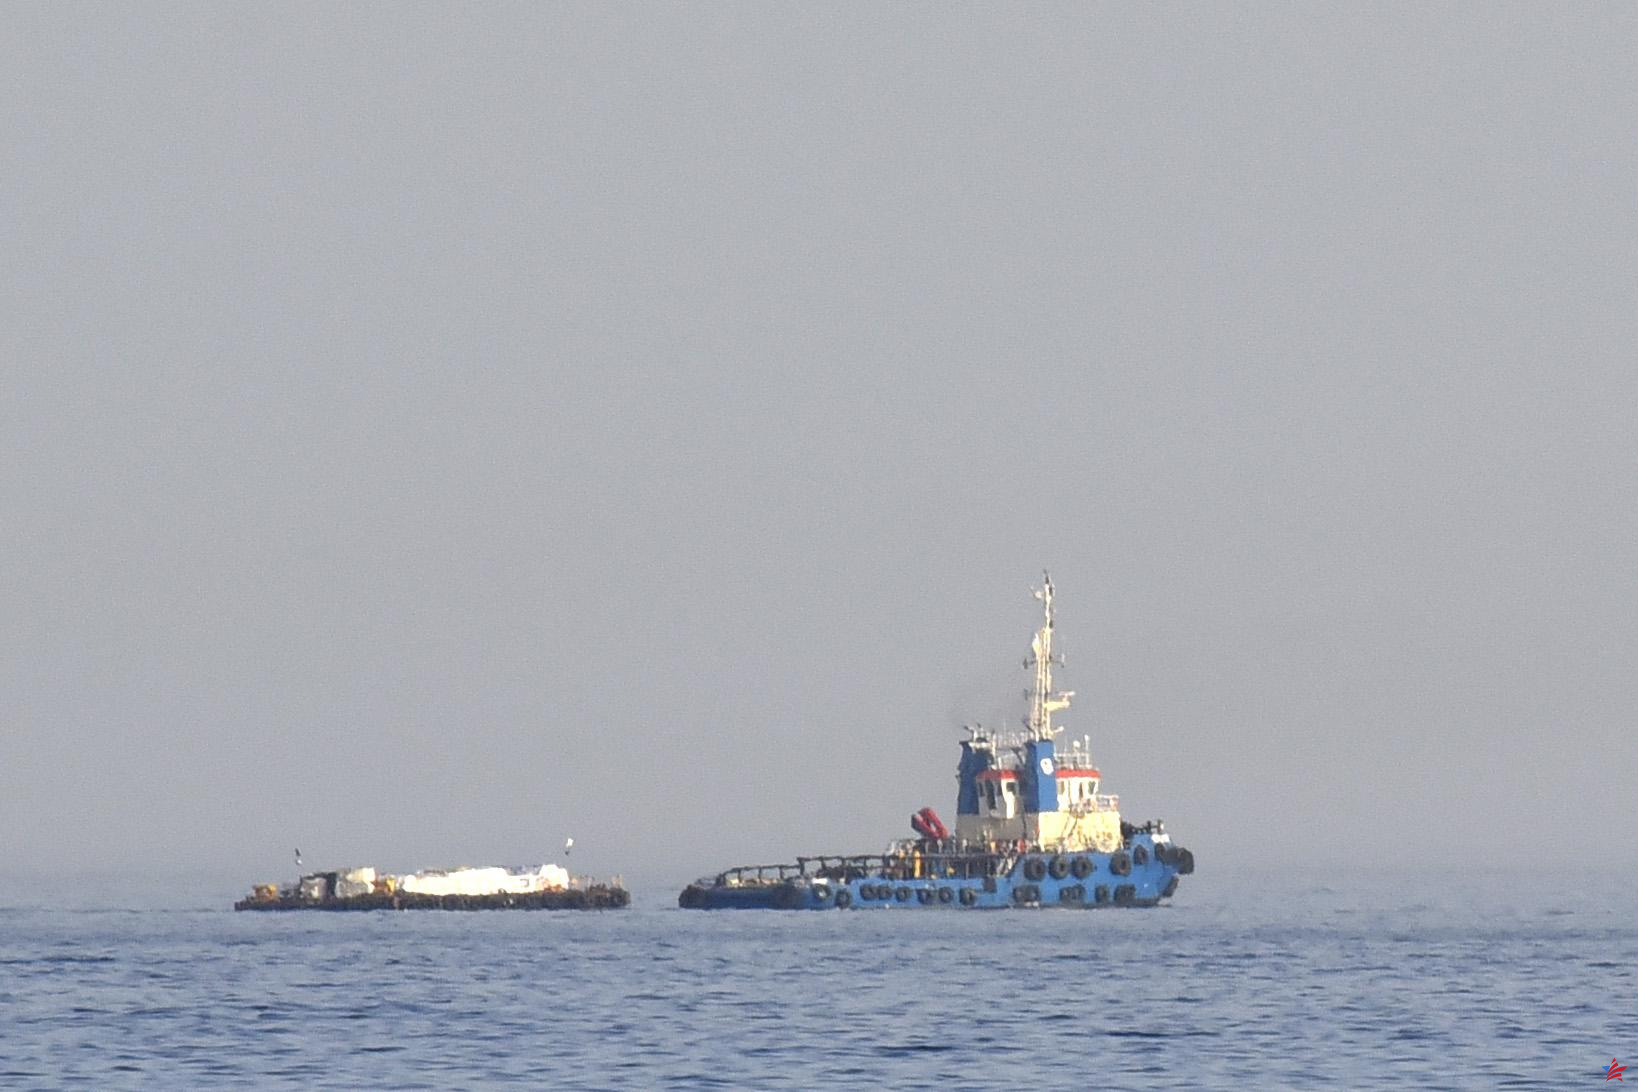 Barco atacado frente a Yemen, anuncia el Reino Unido